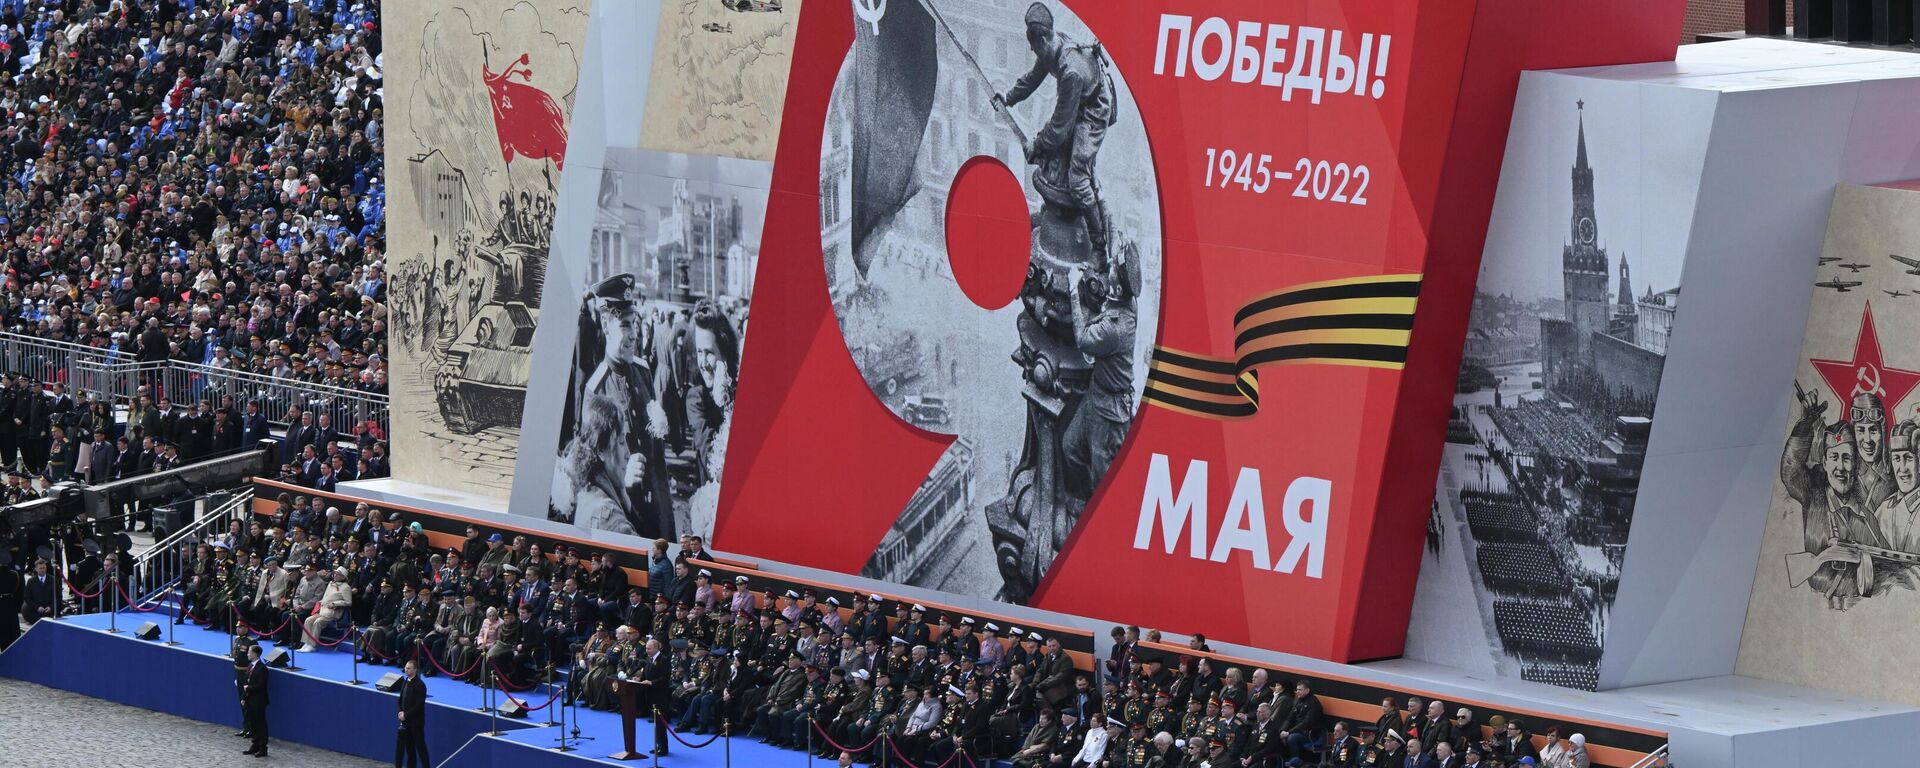 Vladimir Putin, presidente russo, em parada militar comemorativa da vitória na Grande Guerra pela Pátria, na Praça Vermelha. Moscou, Rússia, 9 de maio de 2022 (foto de arquivo) - Sputnik Brasil, 1920, 30.12.2022